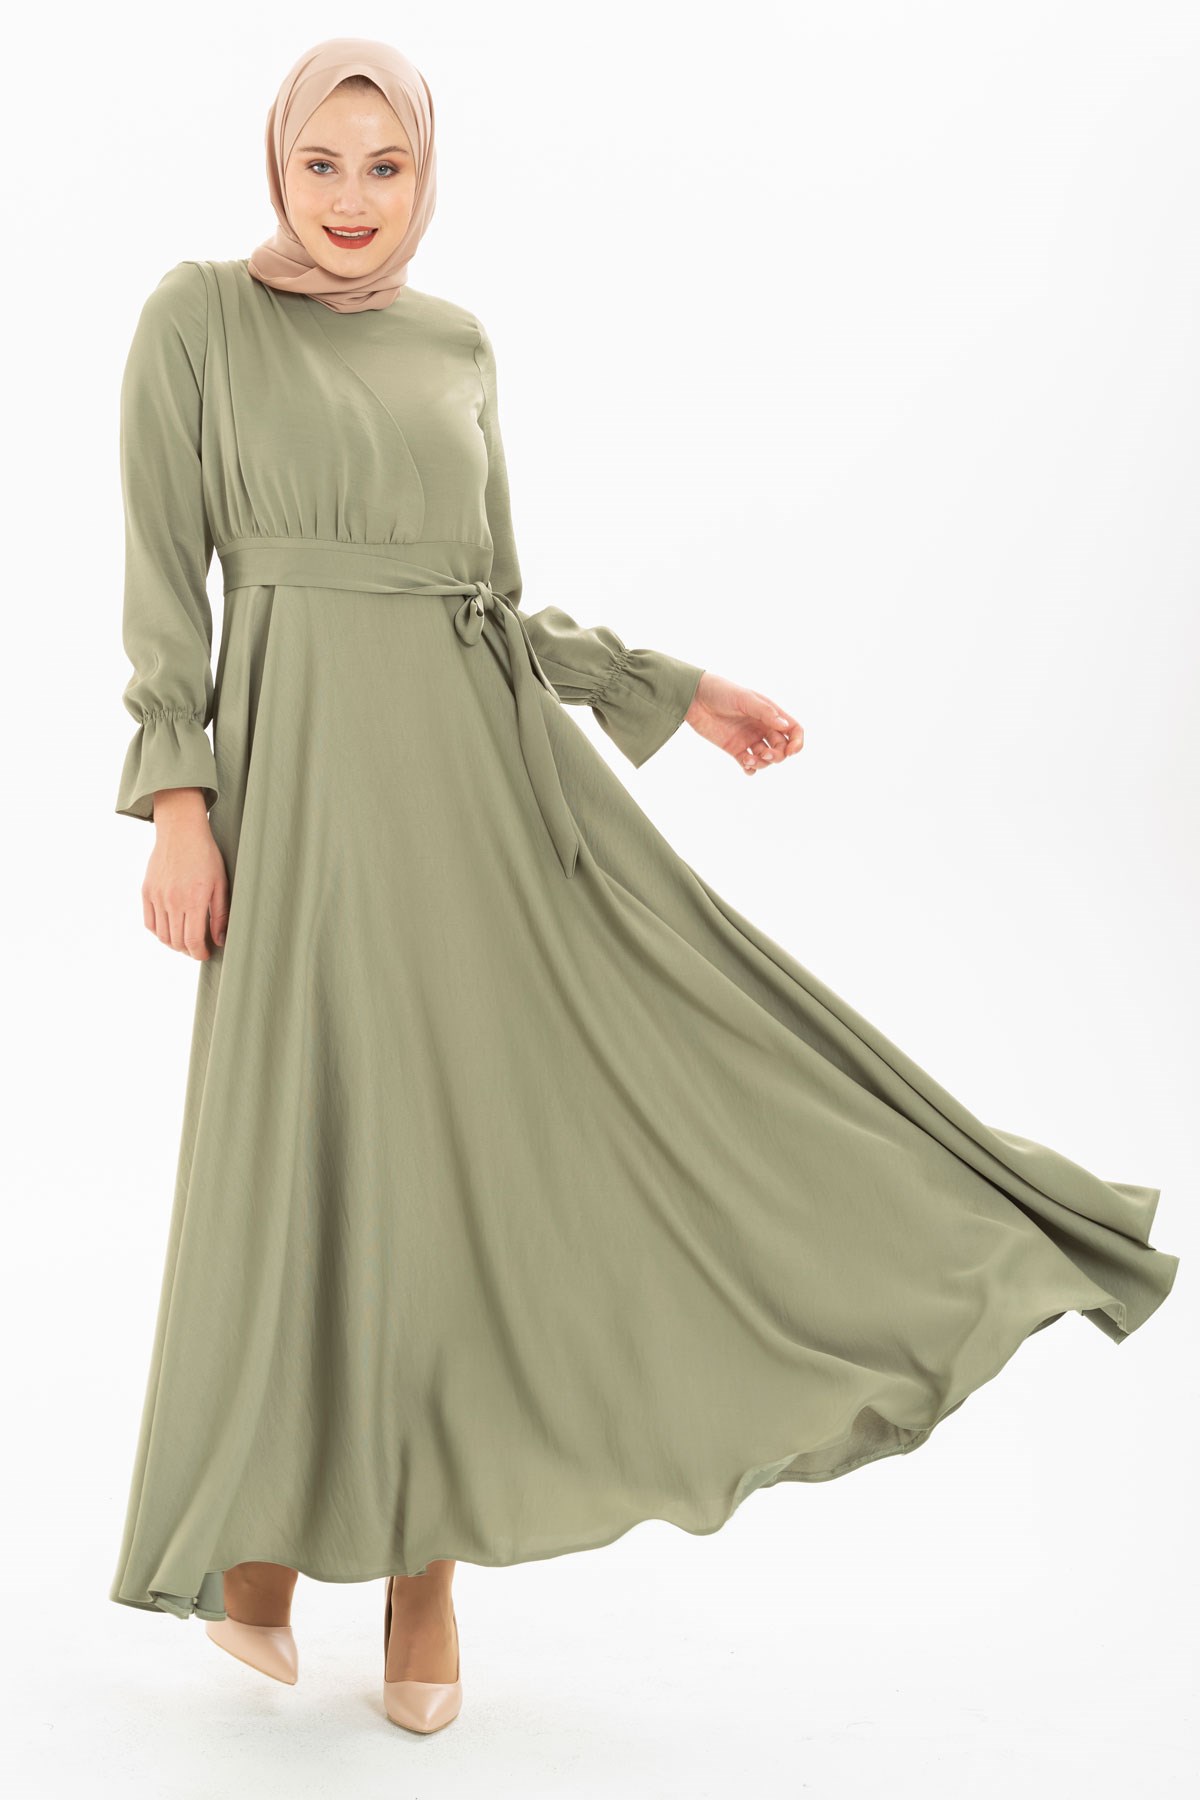 Kloş Su Yeşili Tesettür Elbise 5214 - Beyza